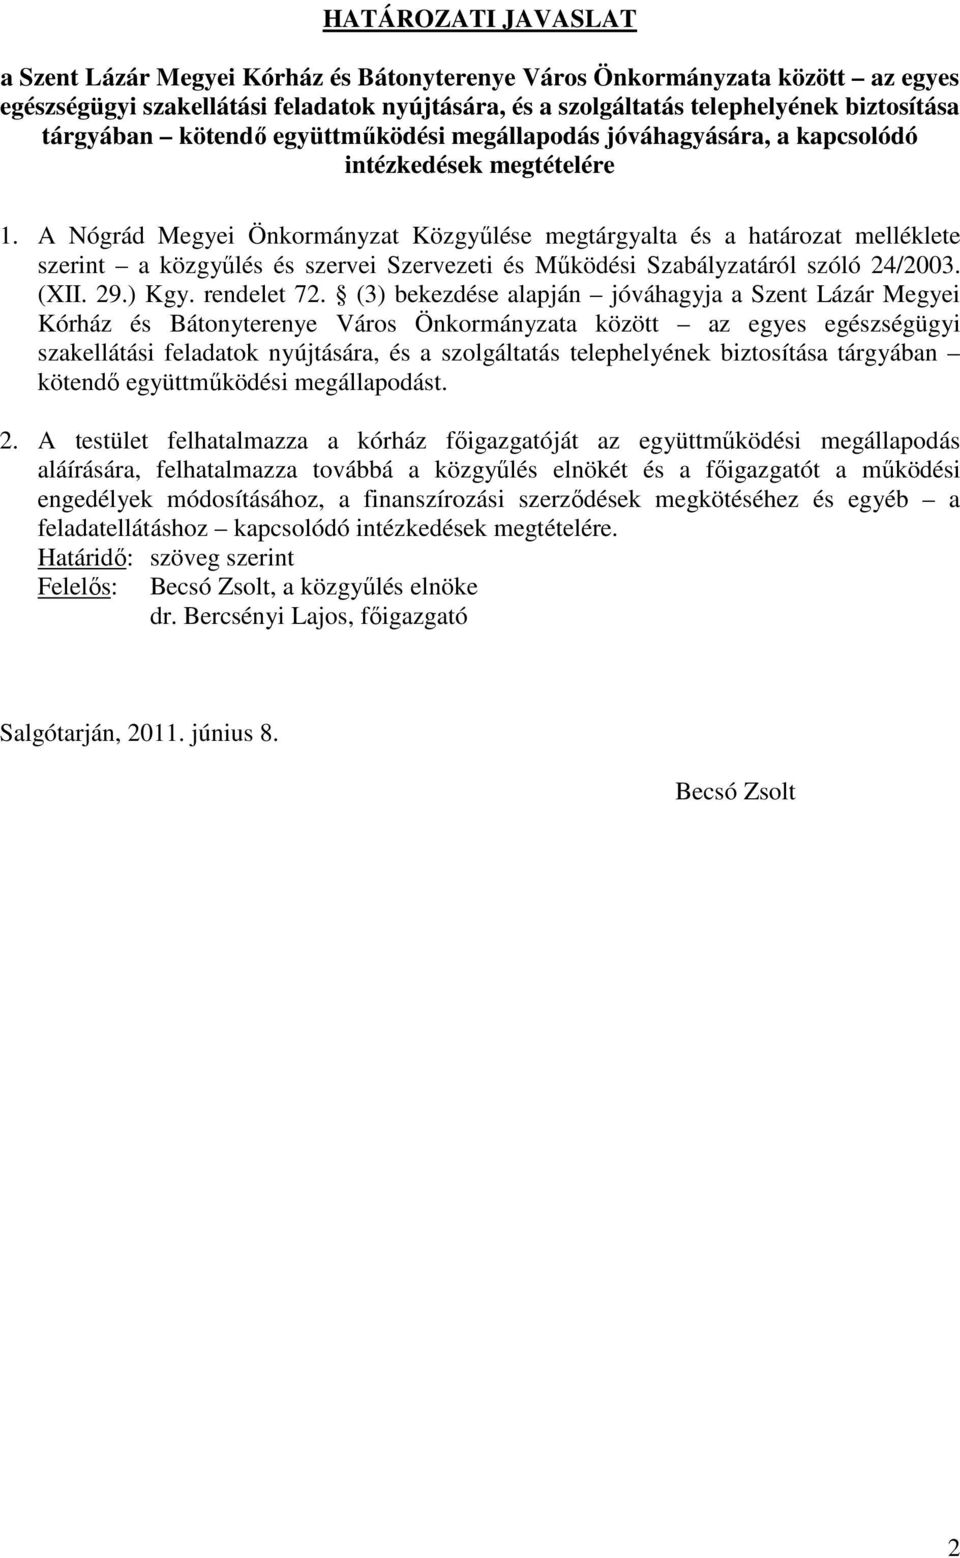 A Nógrád Megyei Önkormányzat Közgyűlése megtárgyalta és a határozat melléklete szerint a közgyűlés és szervei Szervezeti és Működési Szabályzatáról szóló 24/2003. (XII. 29.) Kgy. rendelet 72.